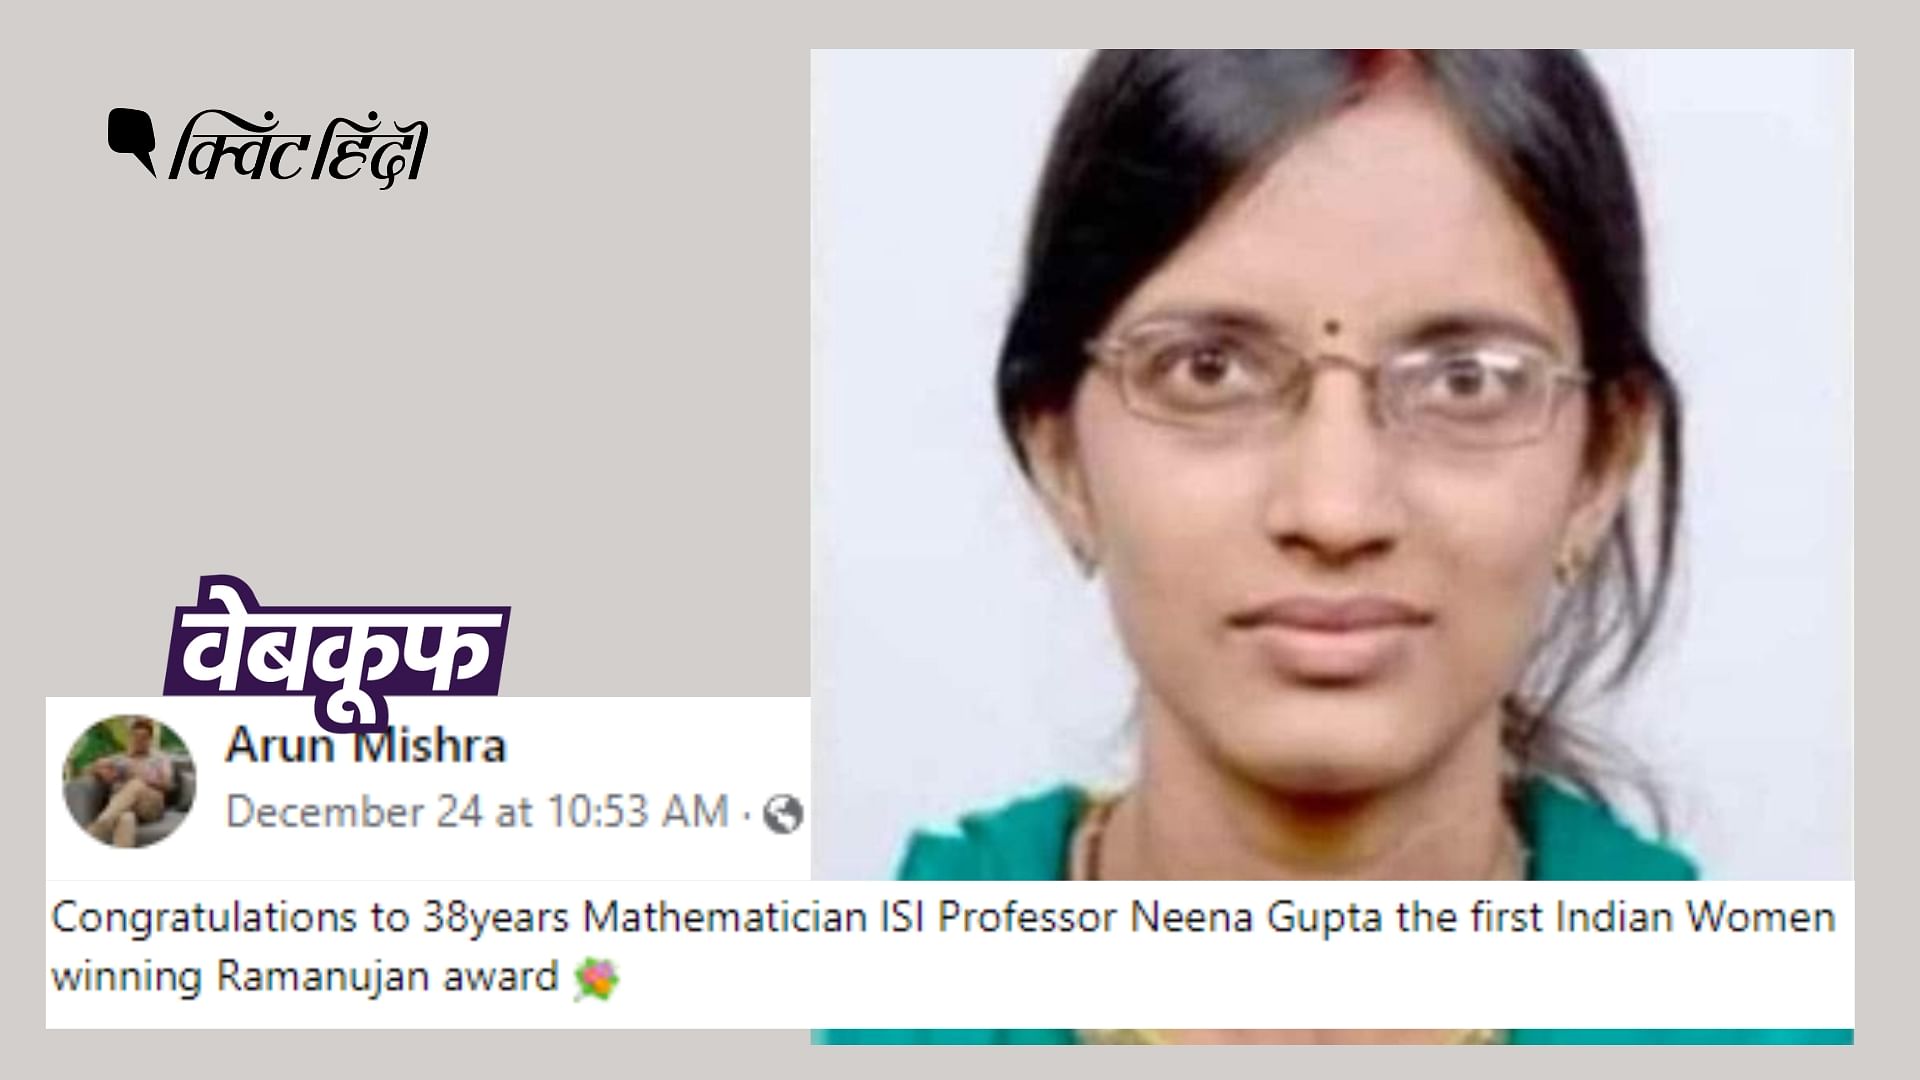 <div class="paragraphs"><p>नीना गुप्ता रामानुजन पुरस्कार जीतने वाली पहली महिला नहीं हैं</p></div>